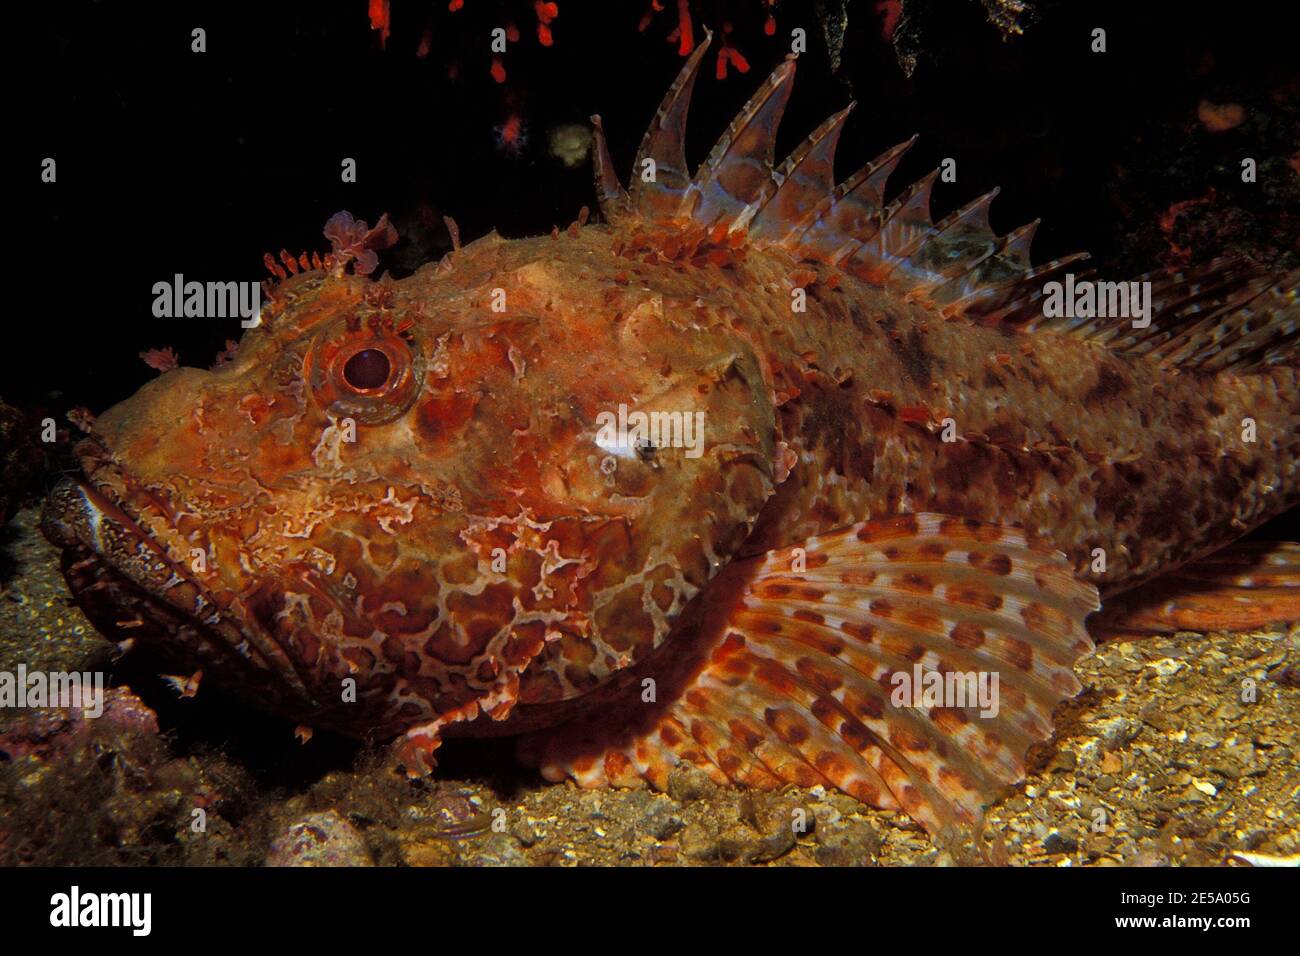 Scorpaena scrofa, red scorpionfish, Großer Roter Drachenkopf, Stock Photo